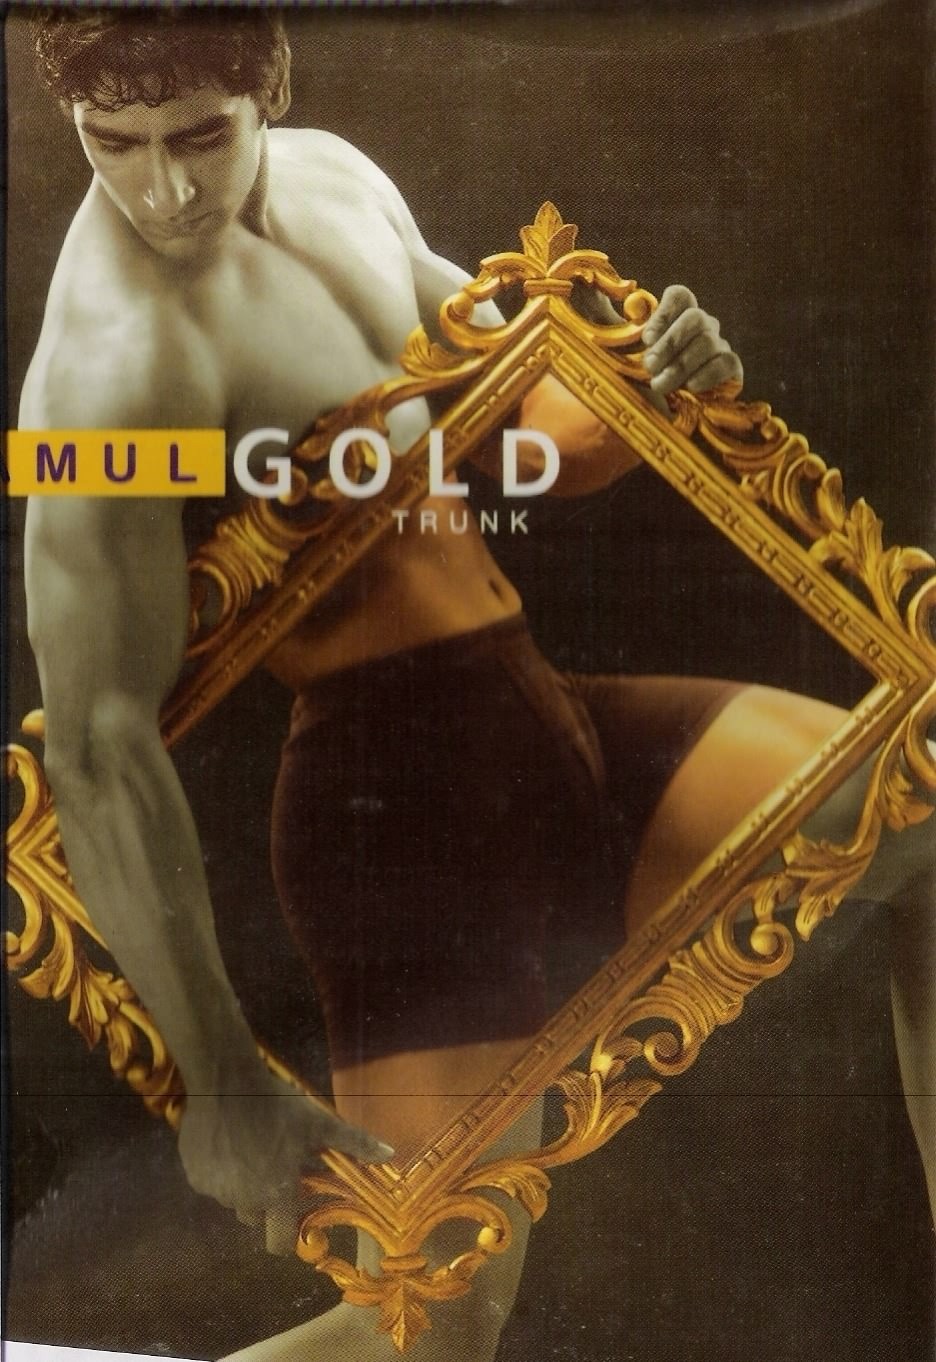 Amul Gold Trunk